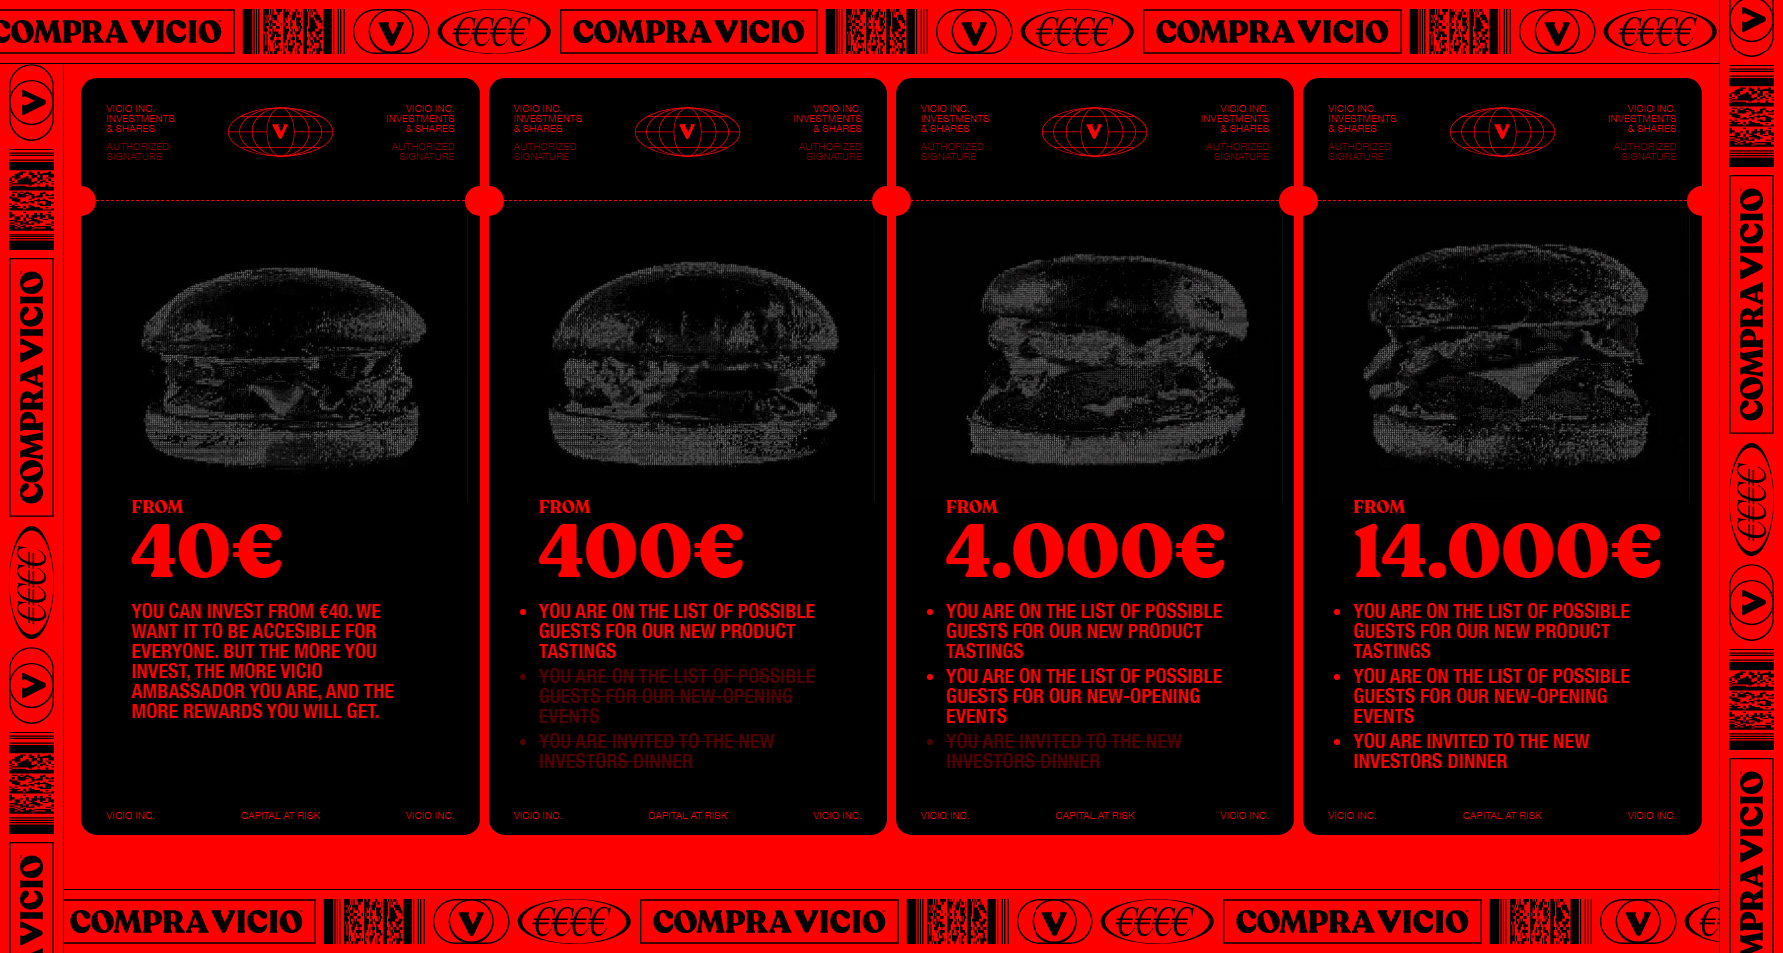 COMPRA VICIO - Website of the Day